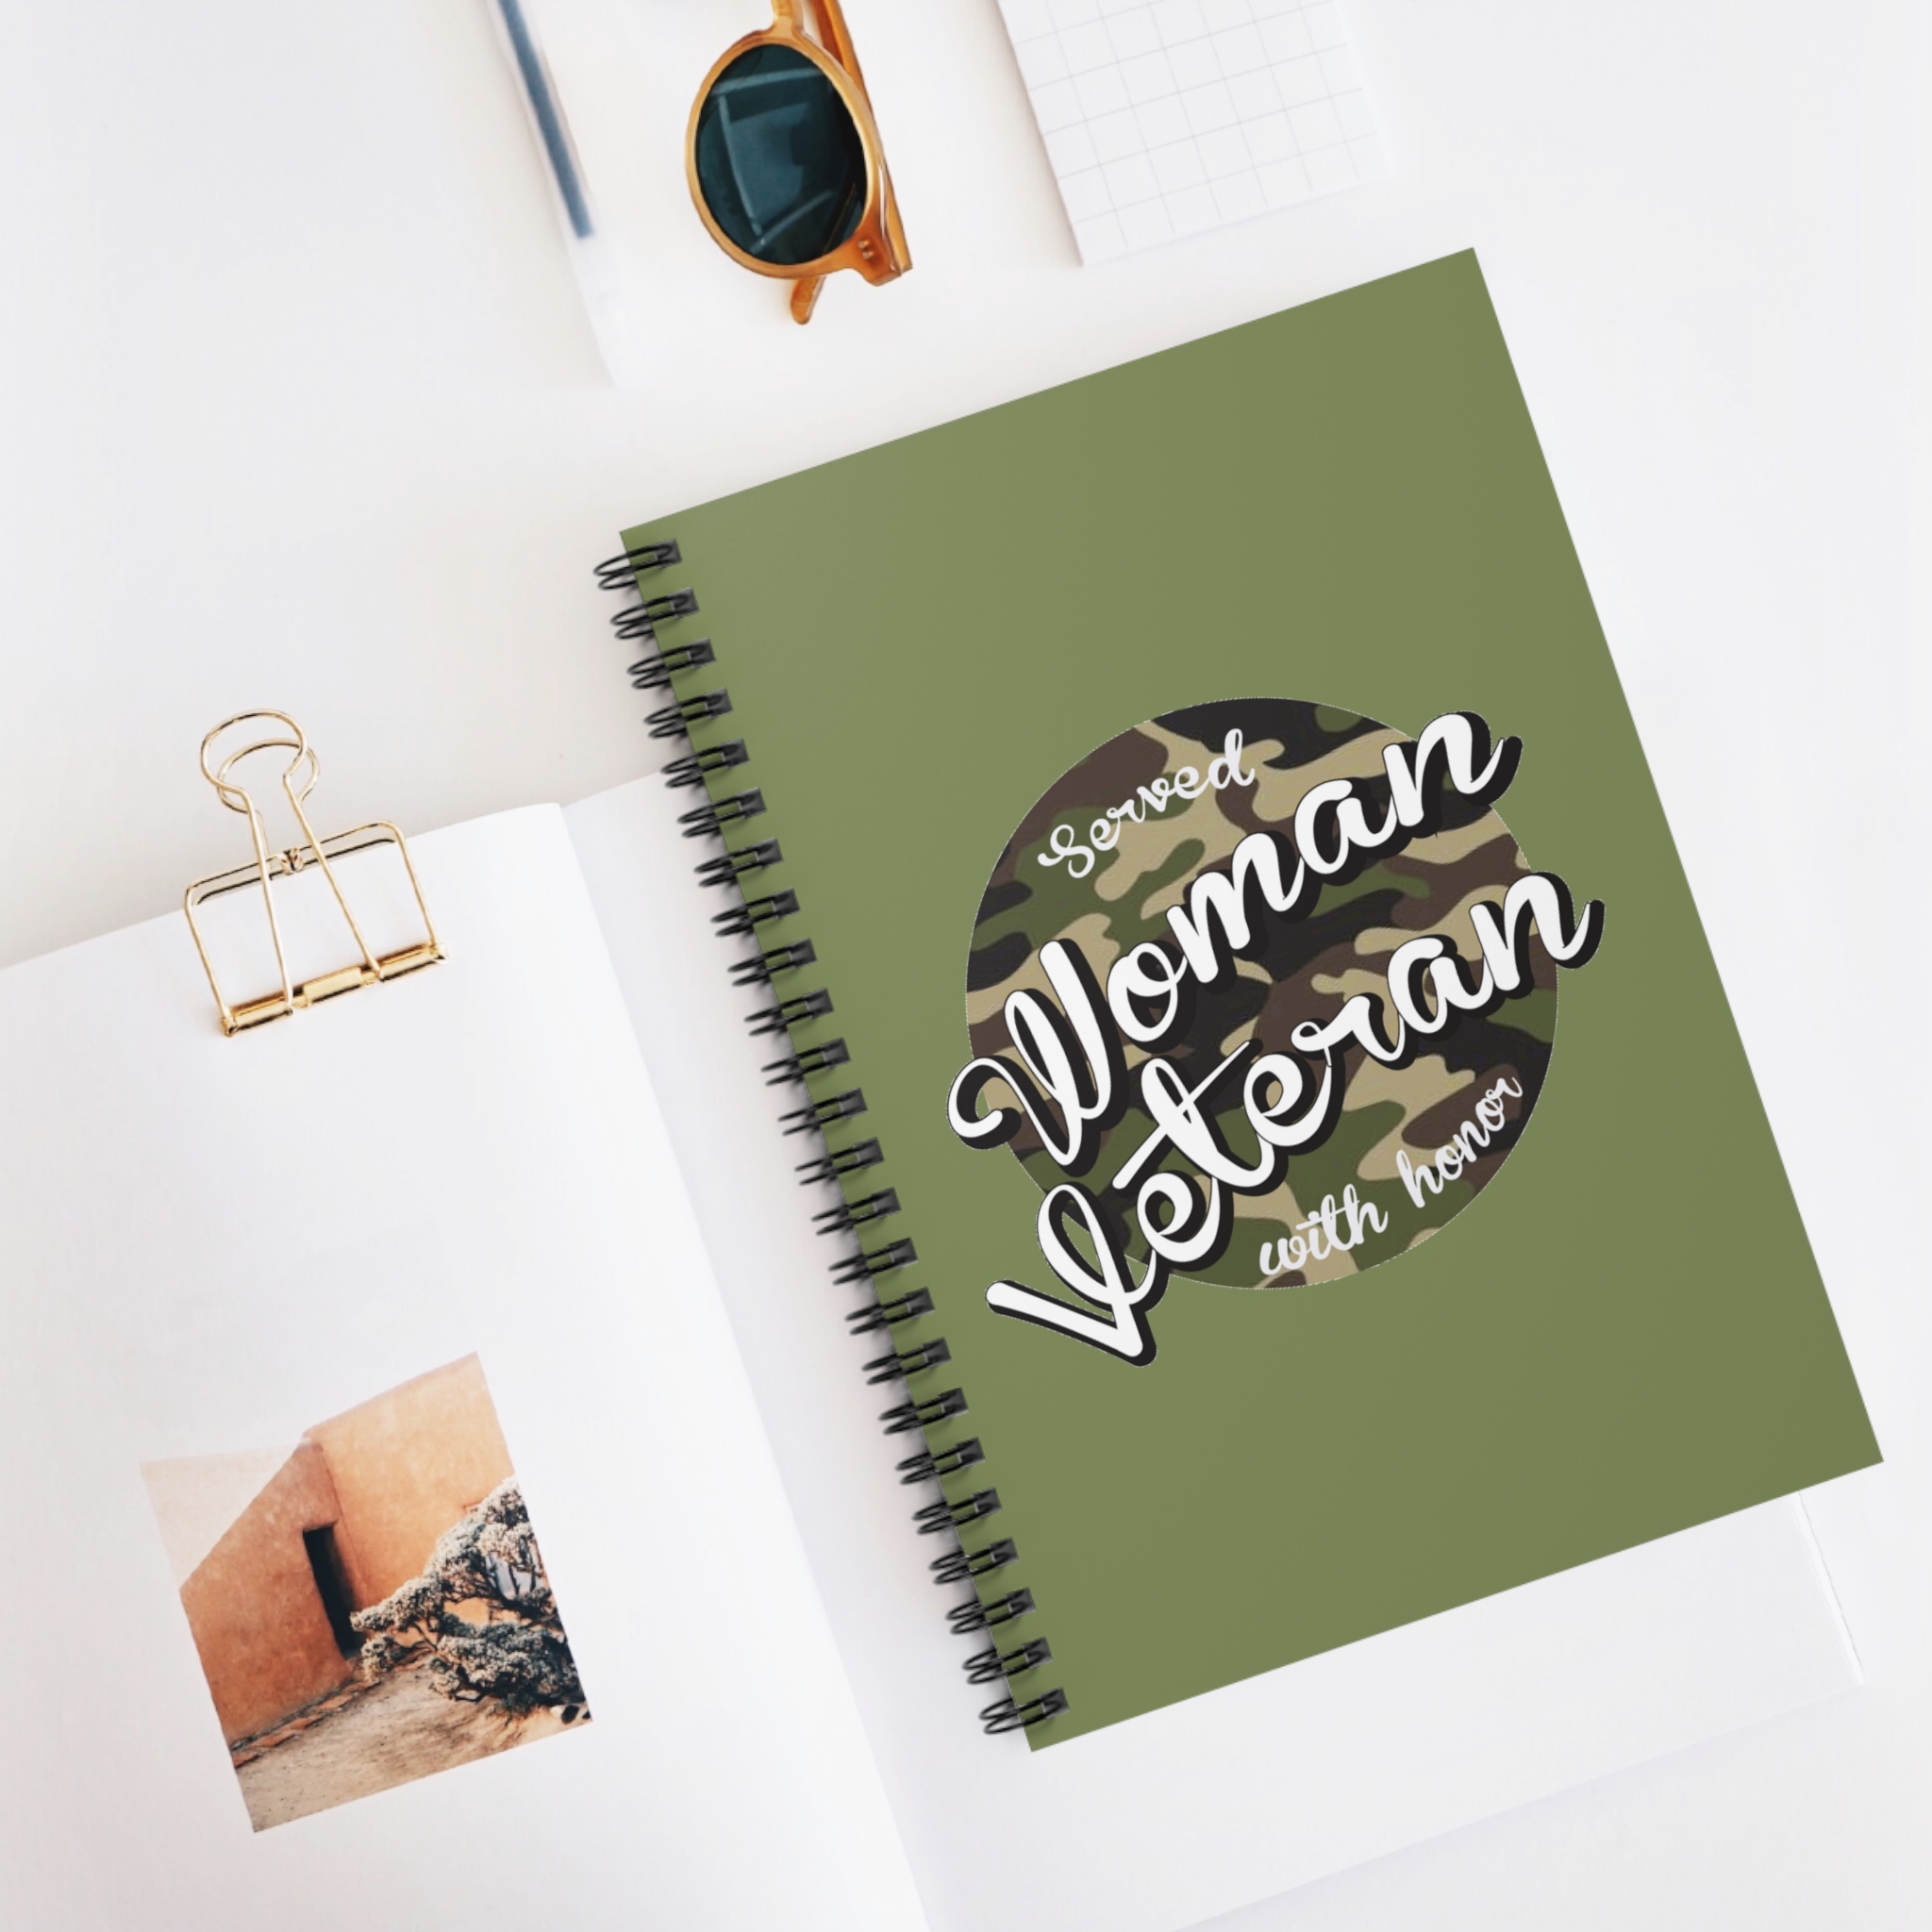 Woman Veteran Notebook - Ruled